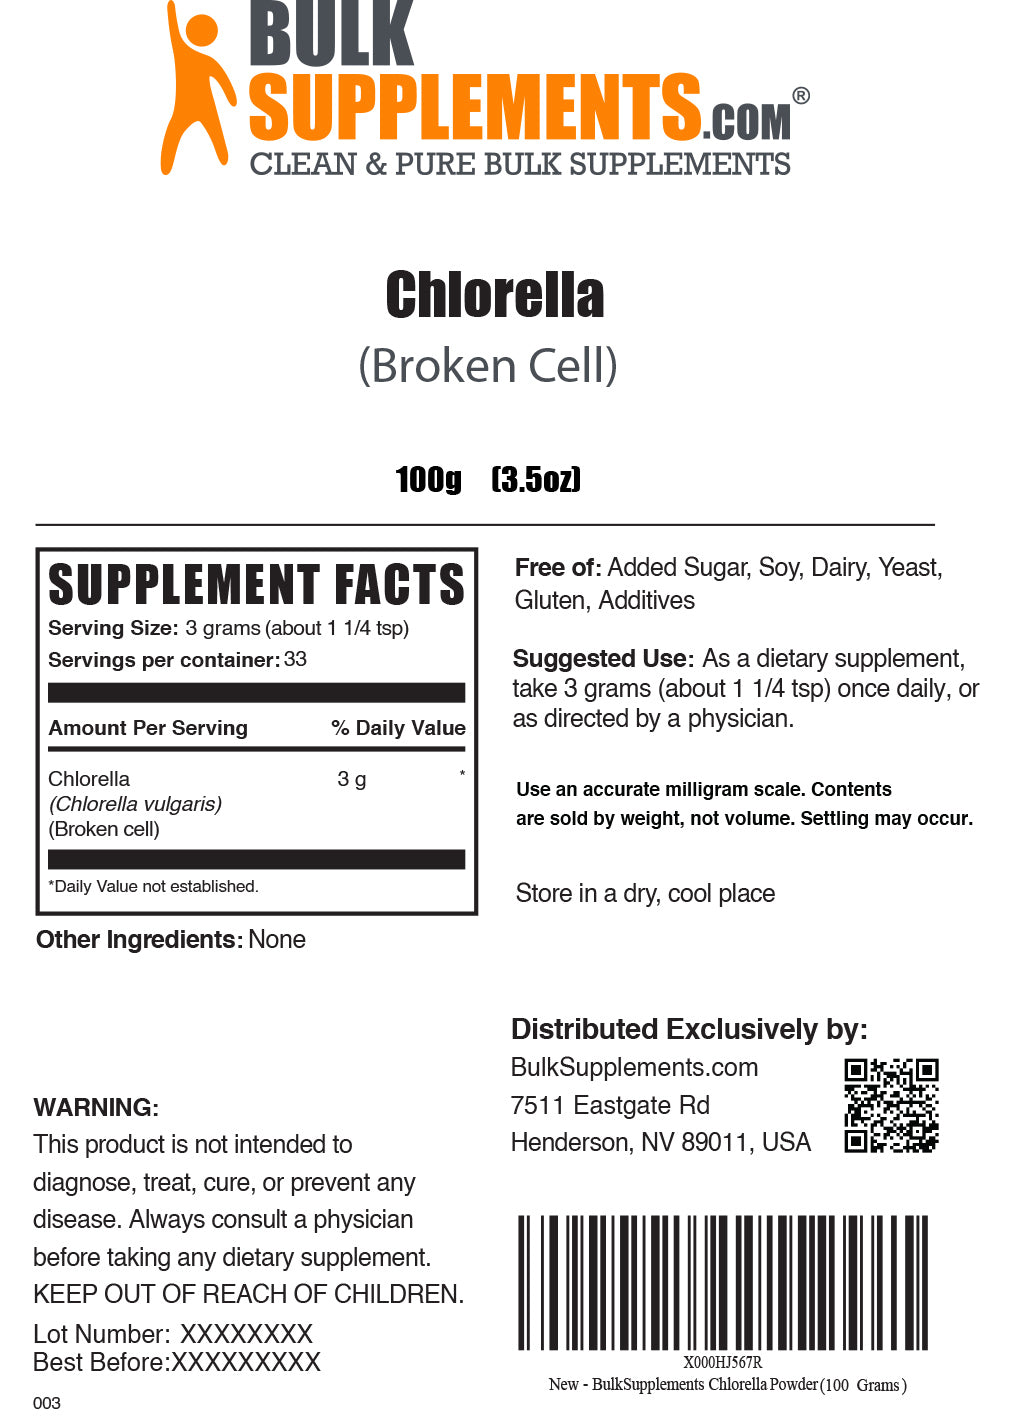 100g of chlorella powder